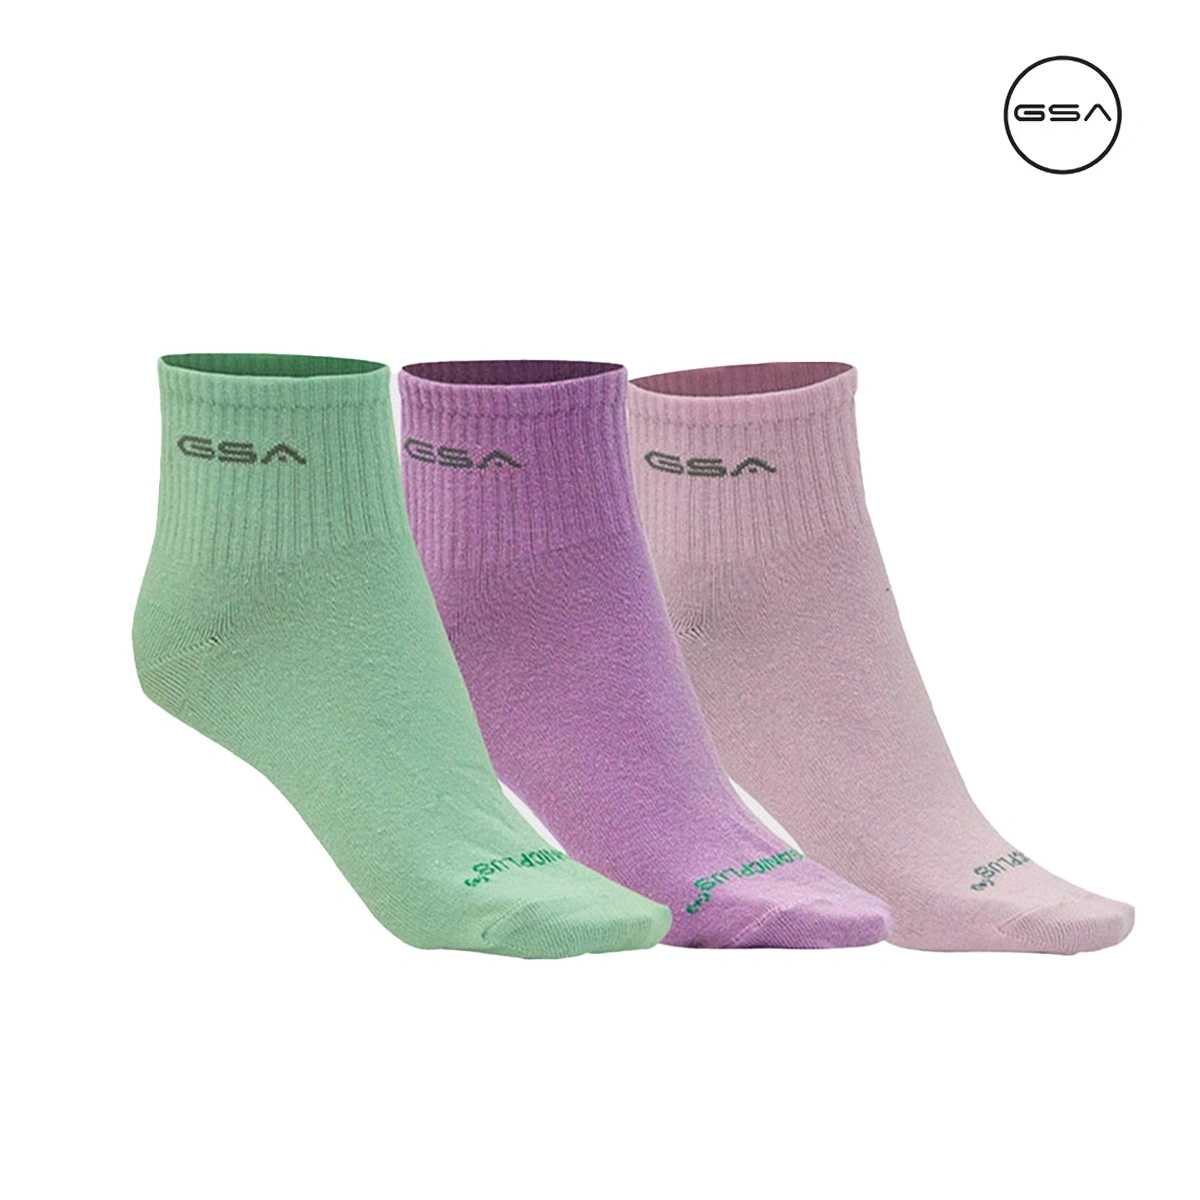 GSA ORGANICPLUS[+] 500 Ultralight Quarter Socks / 3Pack Γυναικείες Κάλτσες  - 8216053-51 - Spot Team